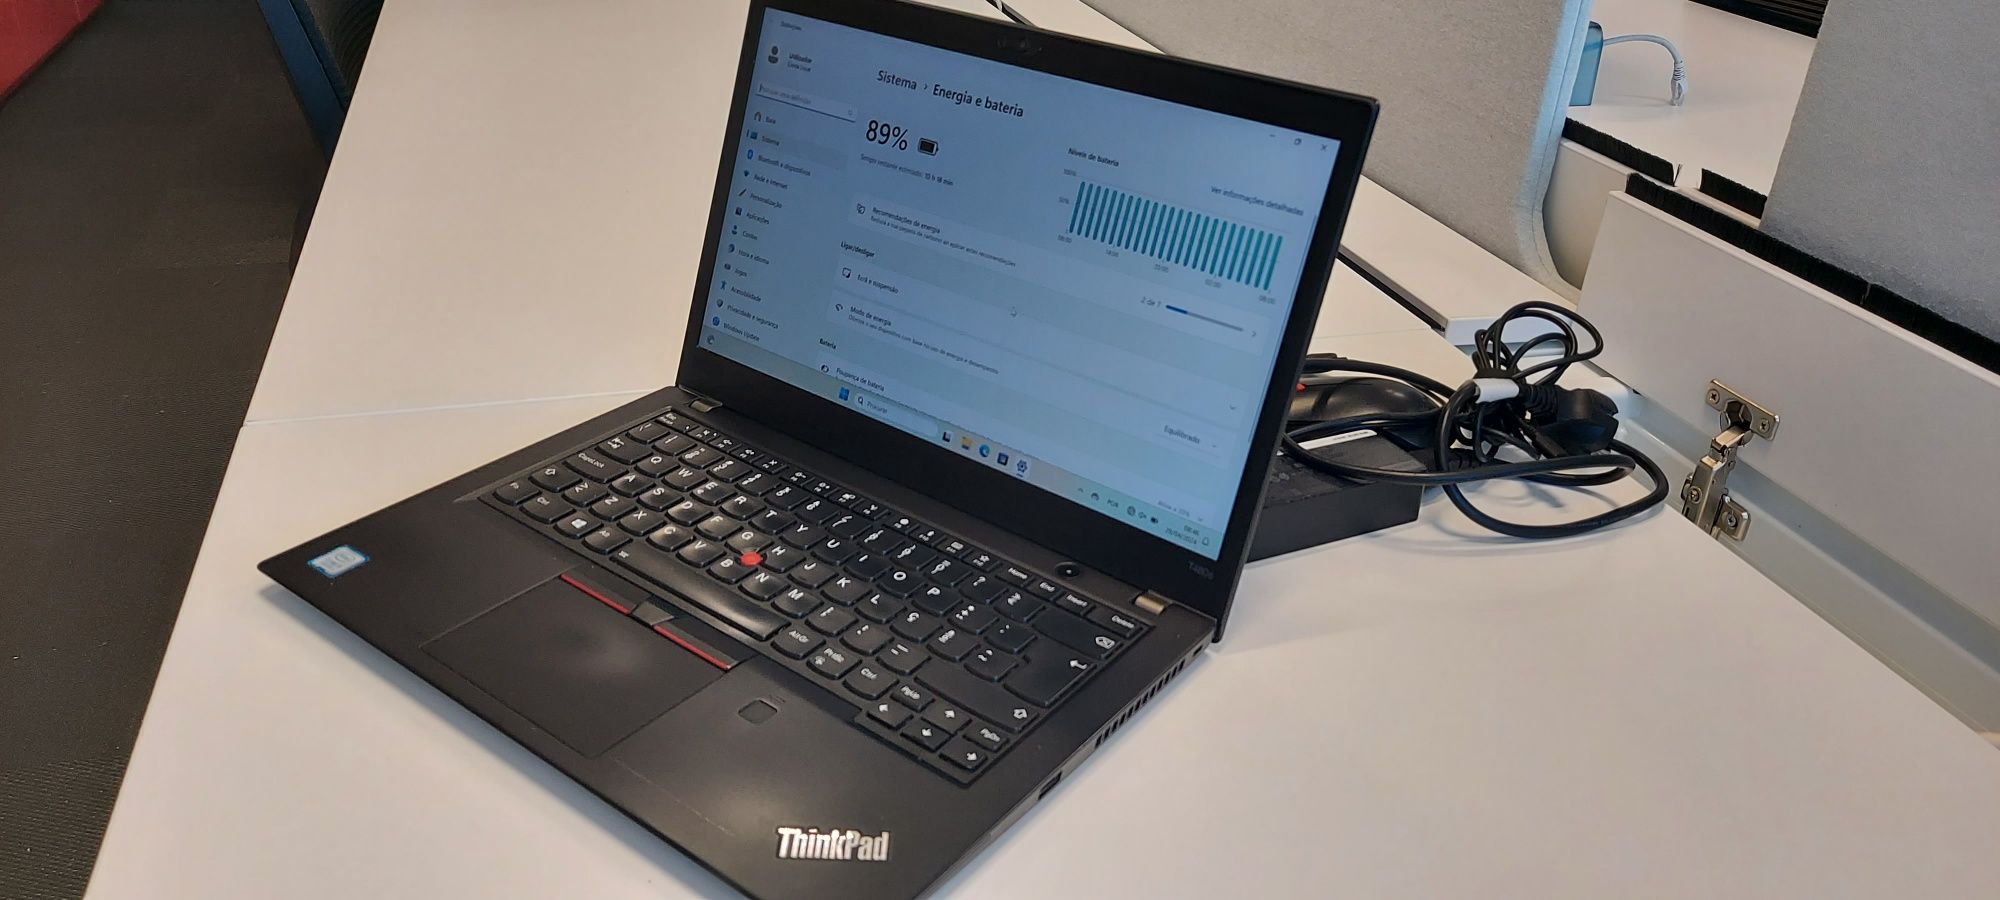 Excelente PC Portátil Lenovo Thinkpad T480s